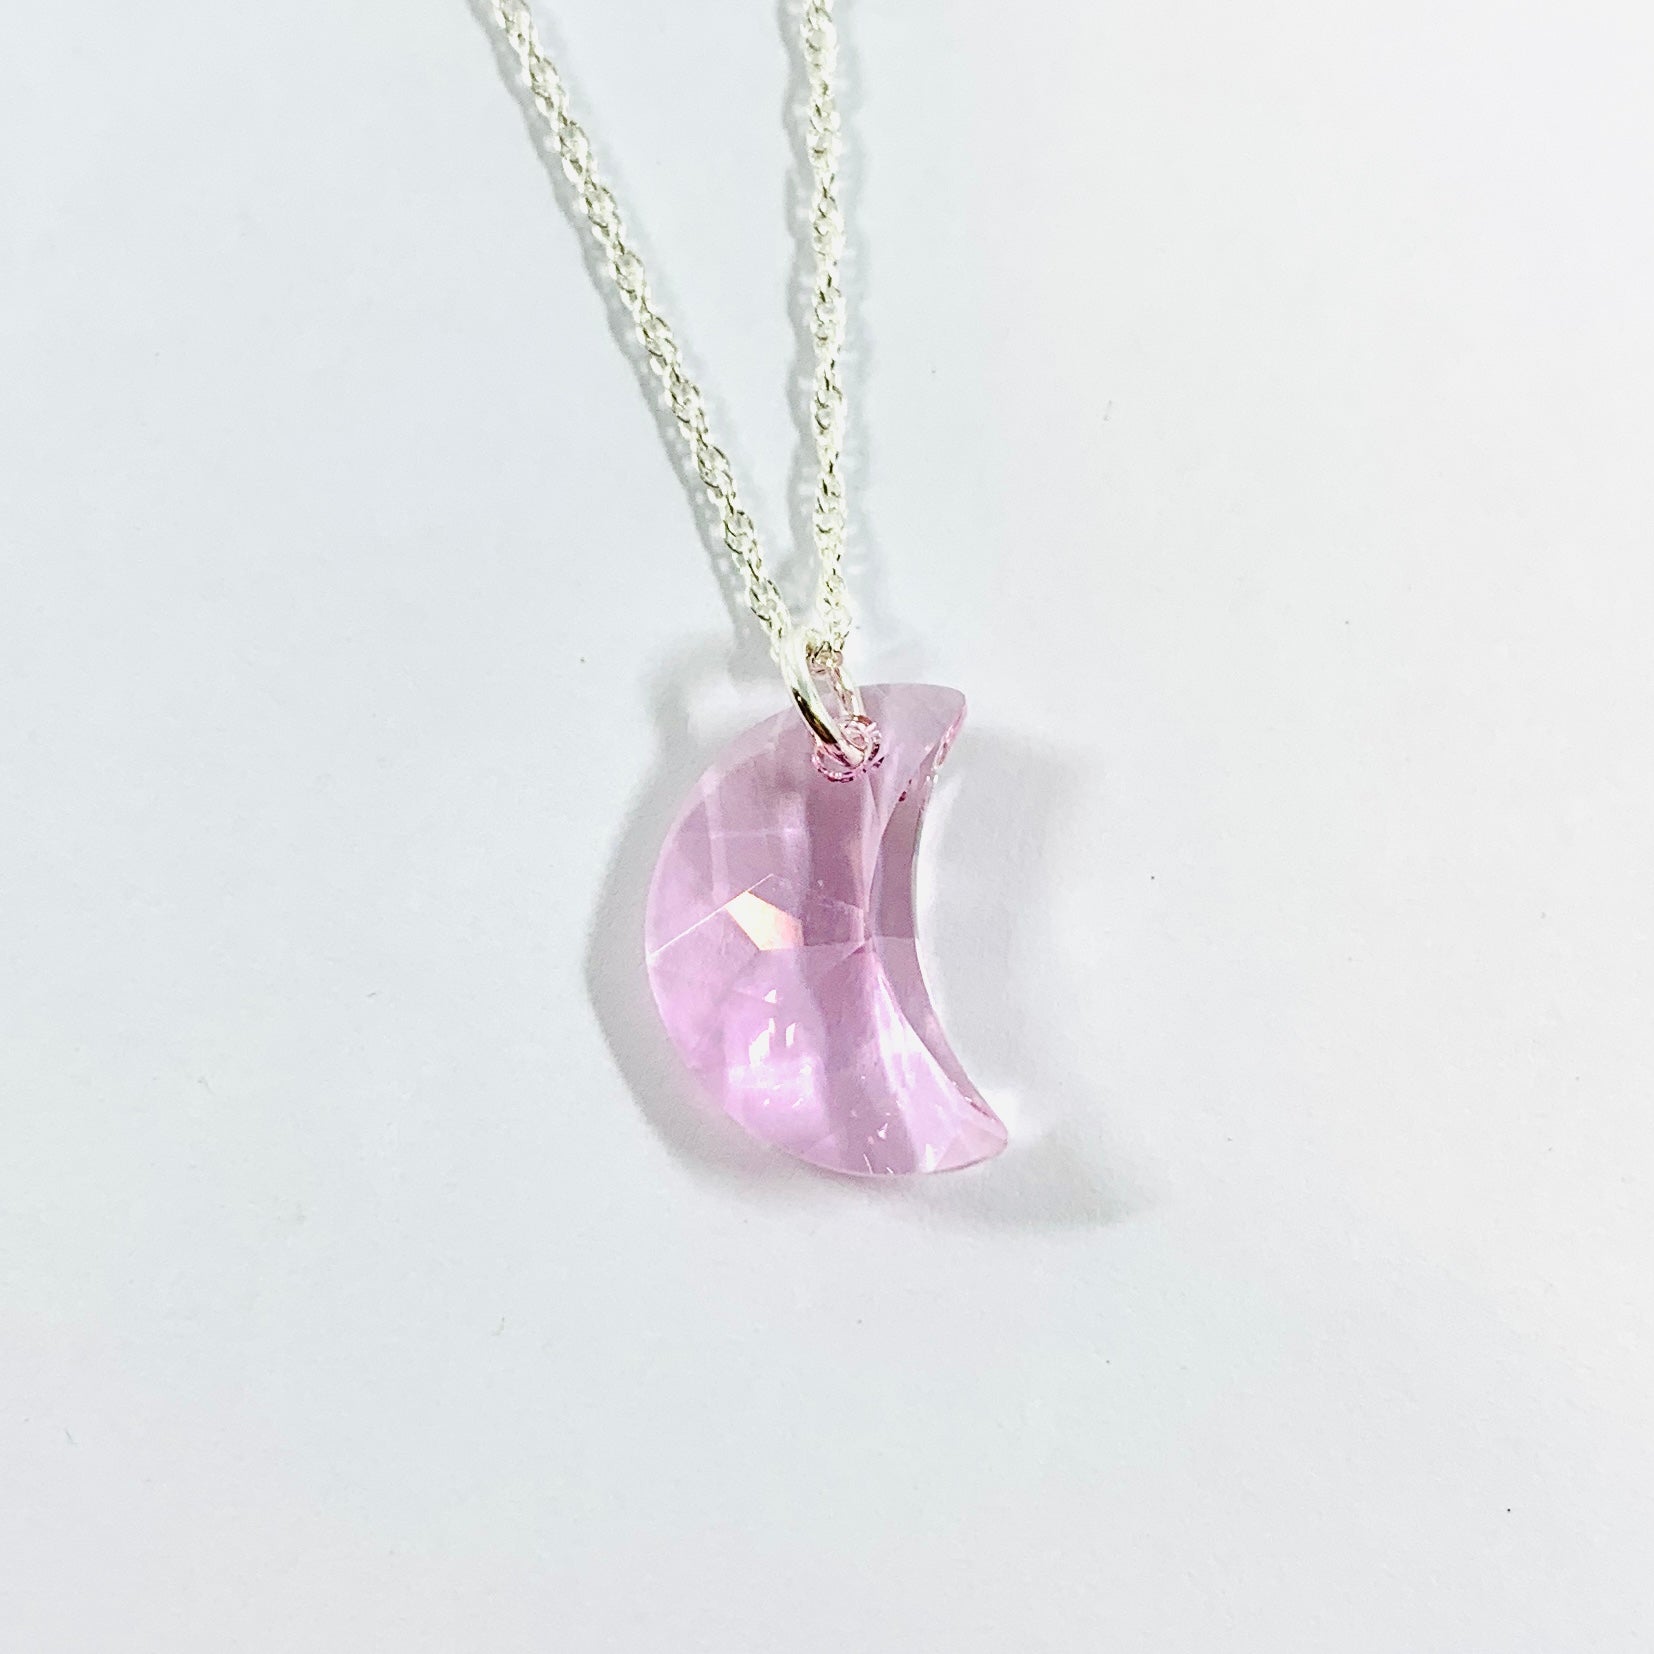 Glowies Glow Jewelry Art & Decor - Key with Crescent Moon & Stars Crystal  Glow Glass Necklace